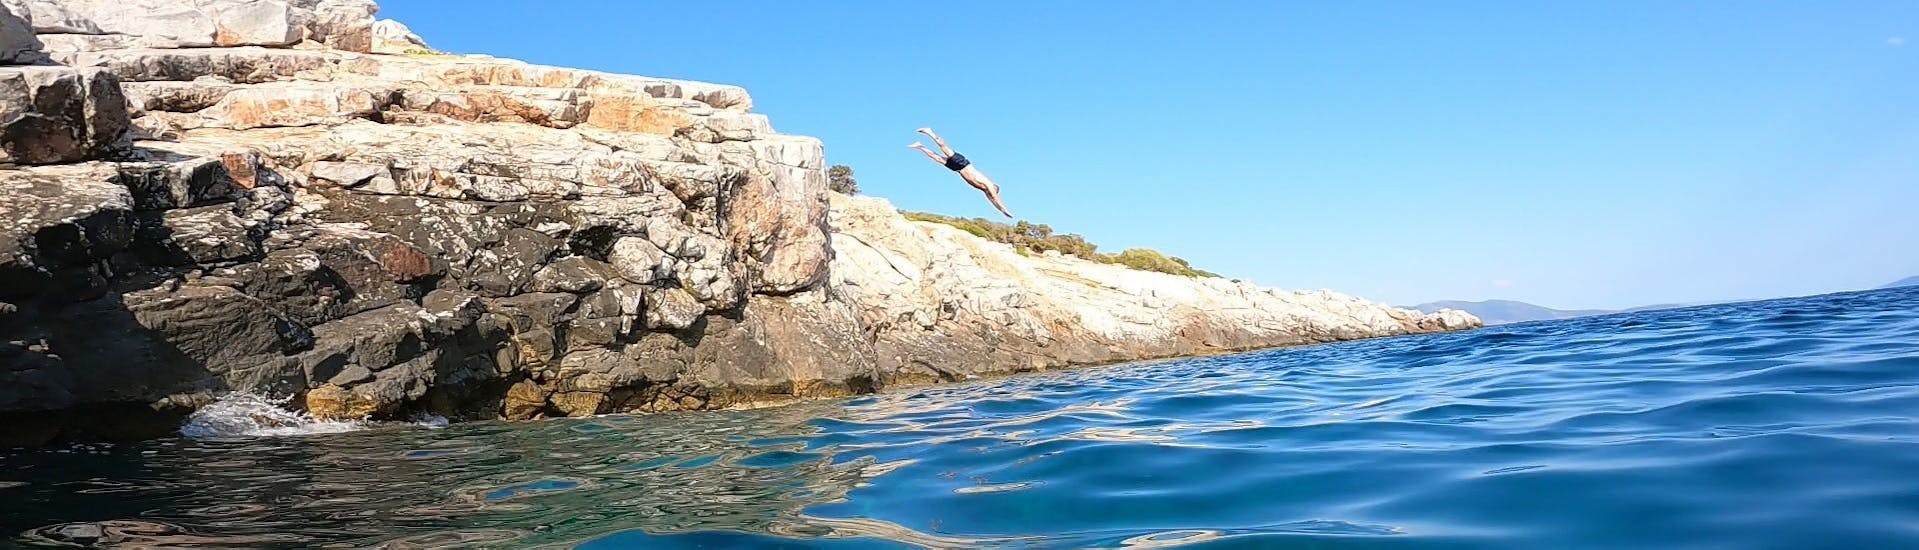 Duikende man tijdens de boottocht met snorkelen en klifspringen bij Athene georganiseerd door Kanelakis Diving Experiences - Dimitris Kanelakis.